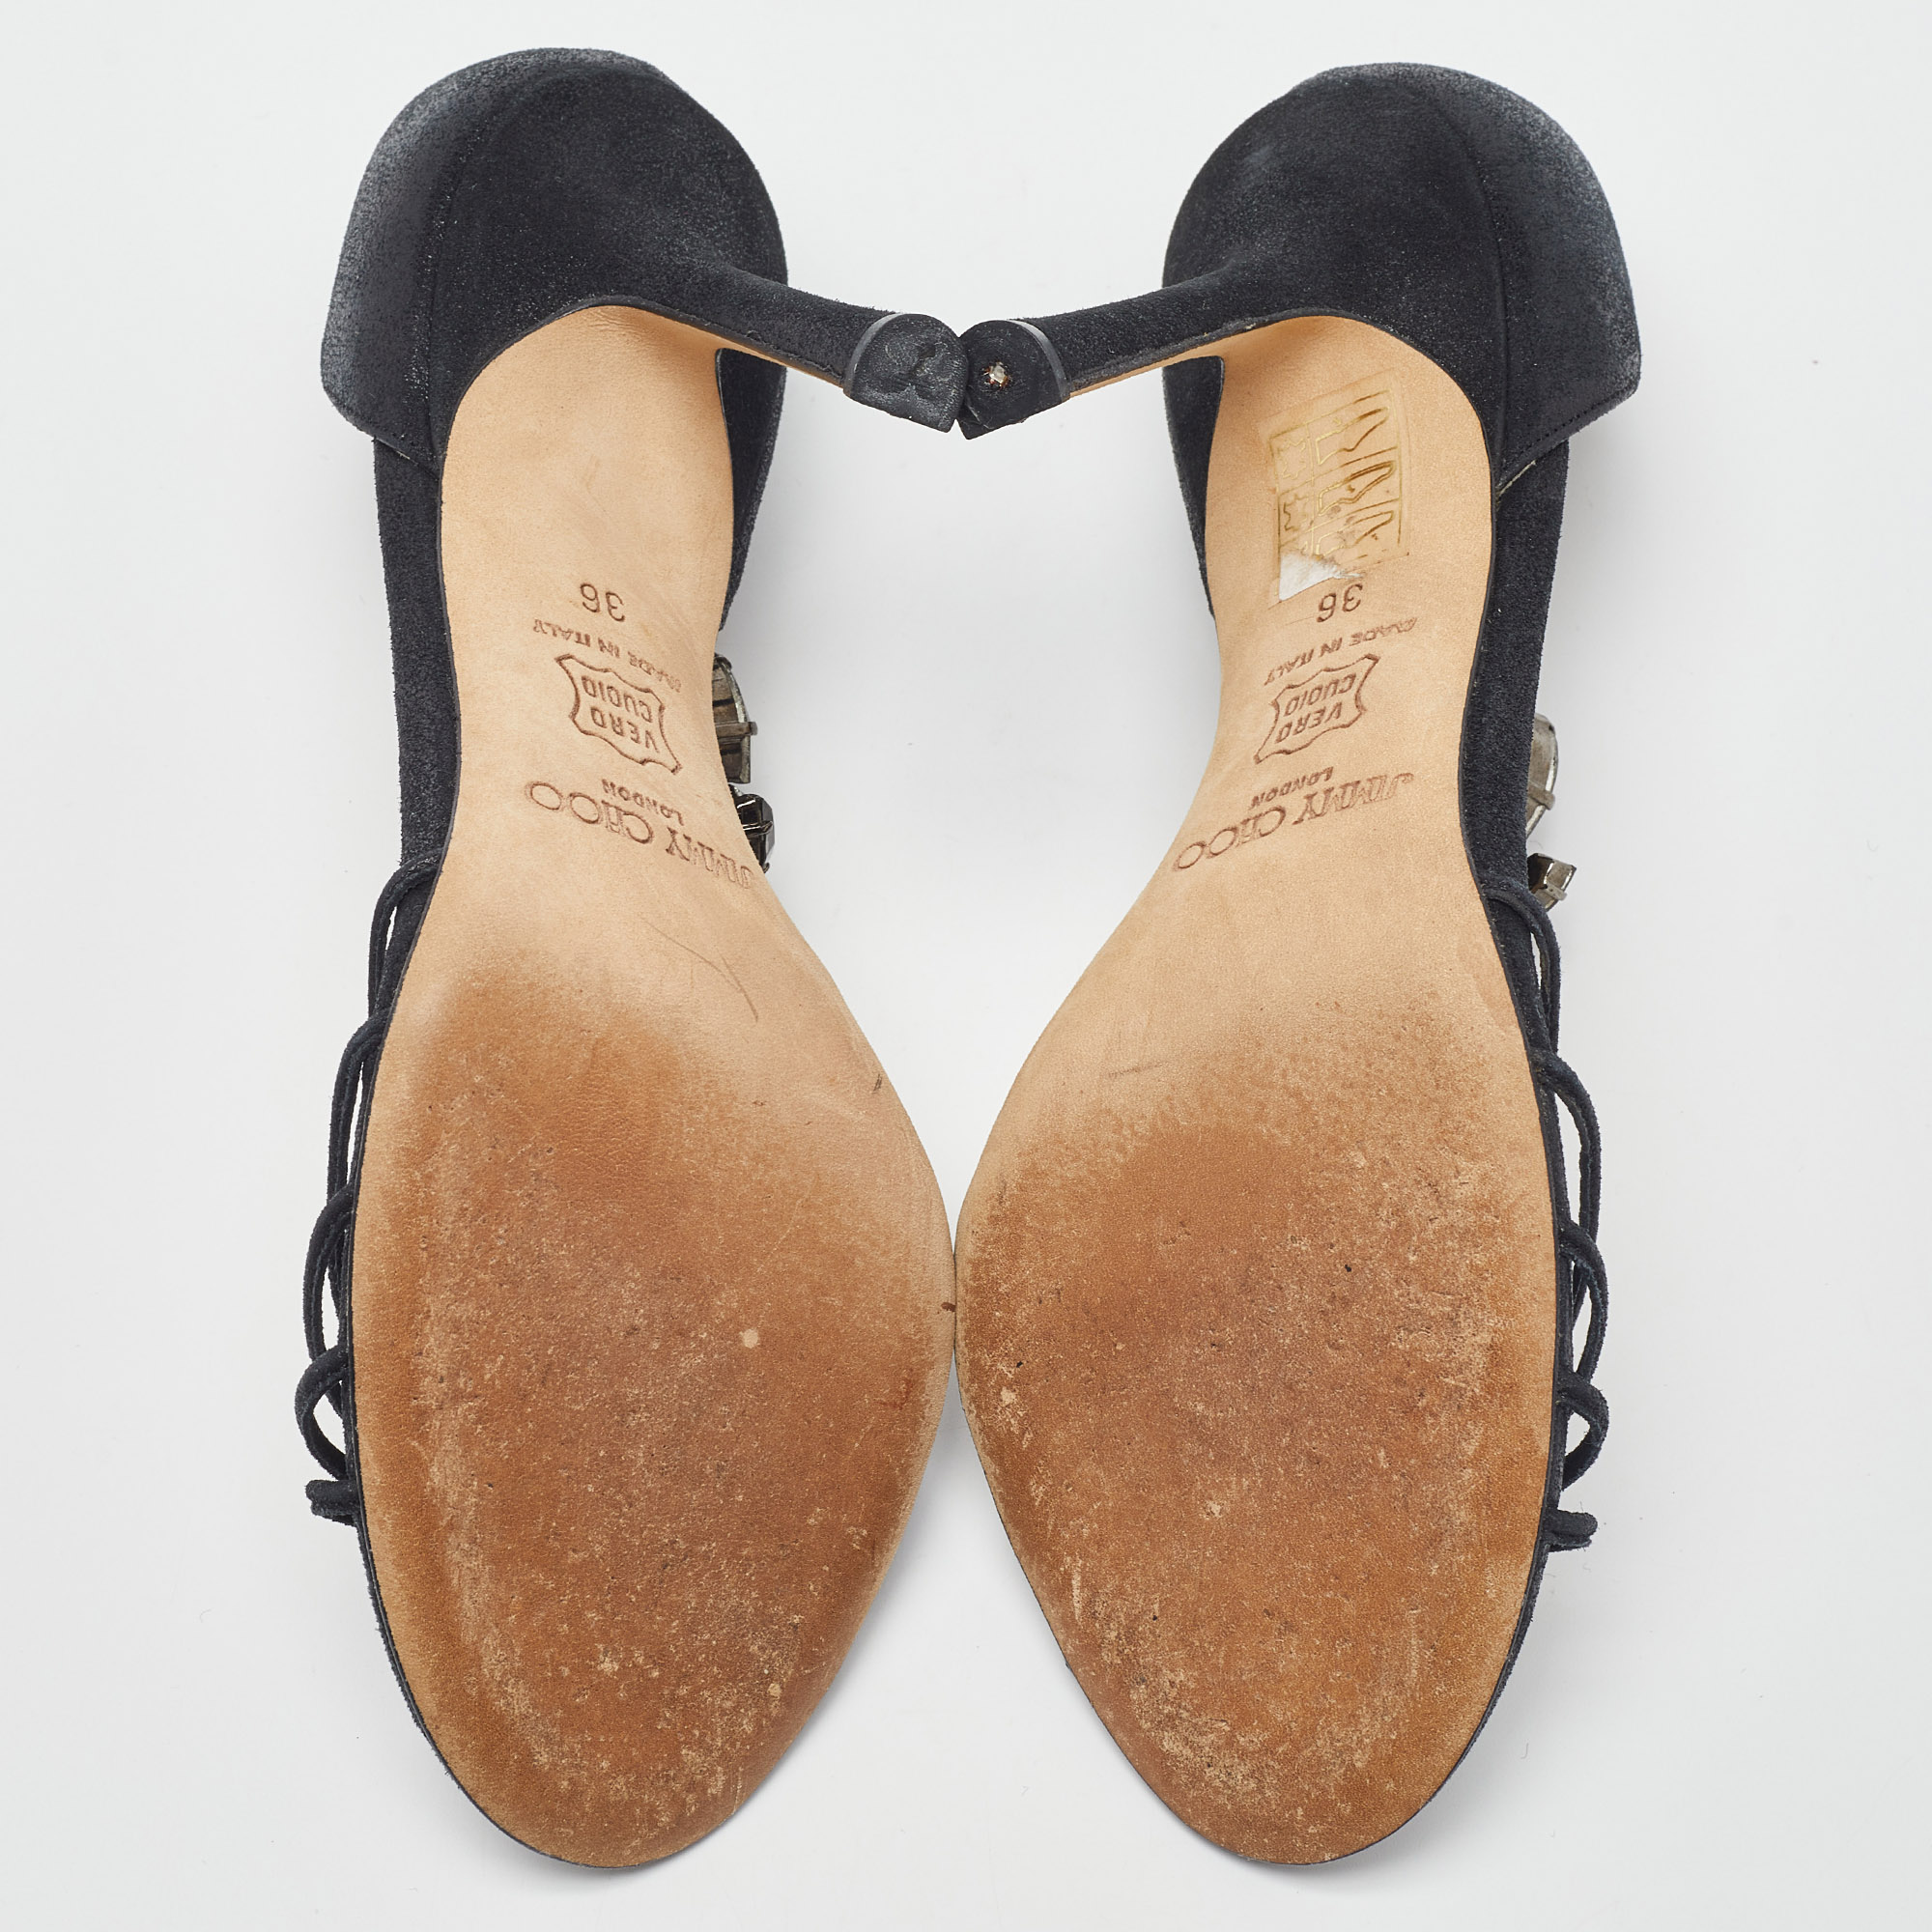 Jimmy Choo Black Glitter Suede Crystal Embellished T-Bar Ankle Strap Sandals Size 36